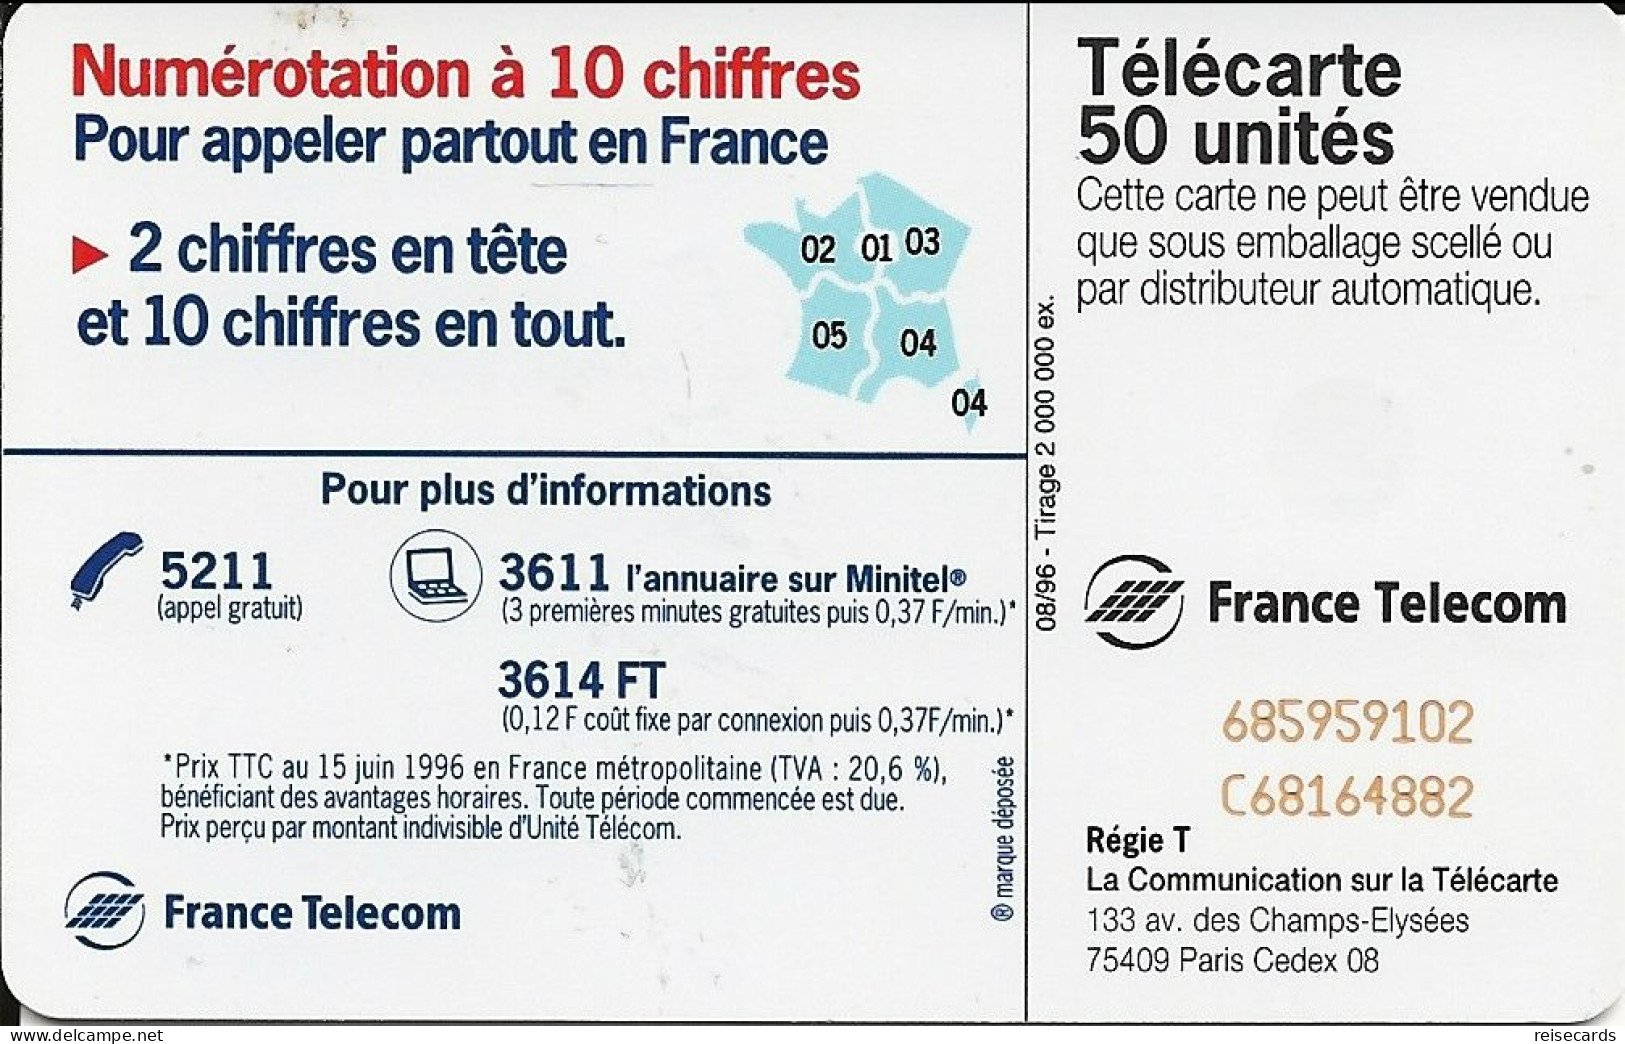 France: France Telecom 08/96 F688 Le 00 Remplace Le 19 - 1996